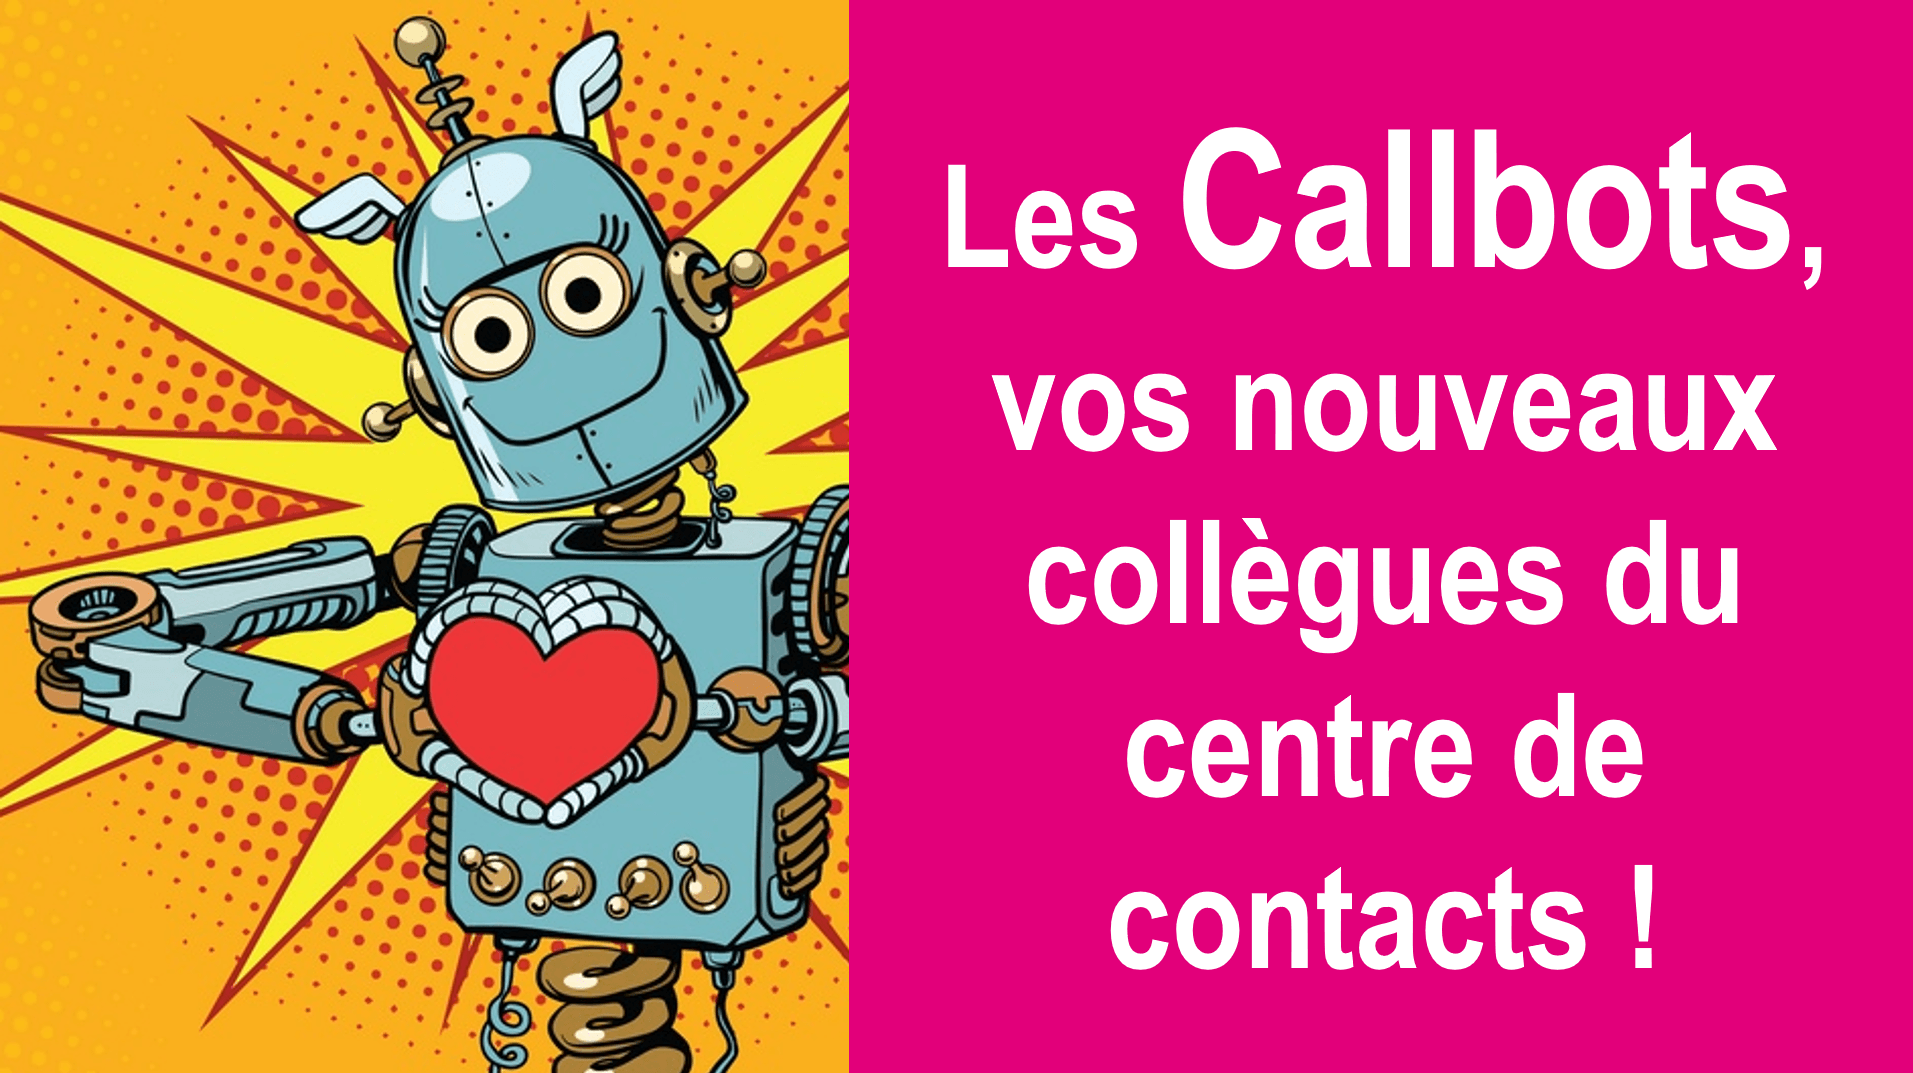 Les Callbots, vos nouveaux collègues du centre de contacts 🤖 ! 19